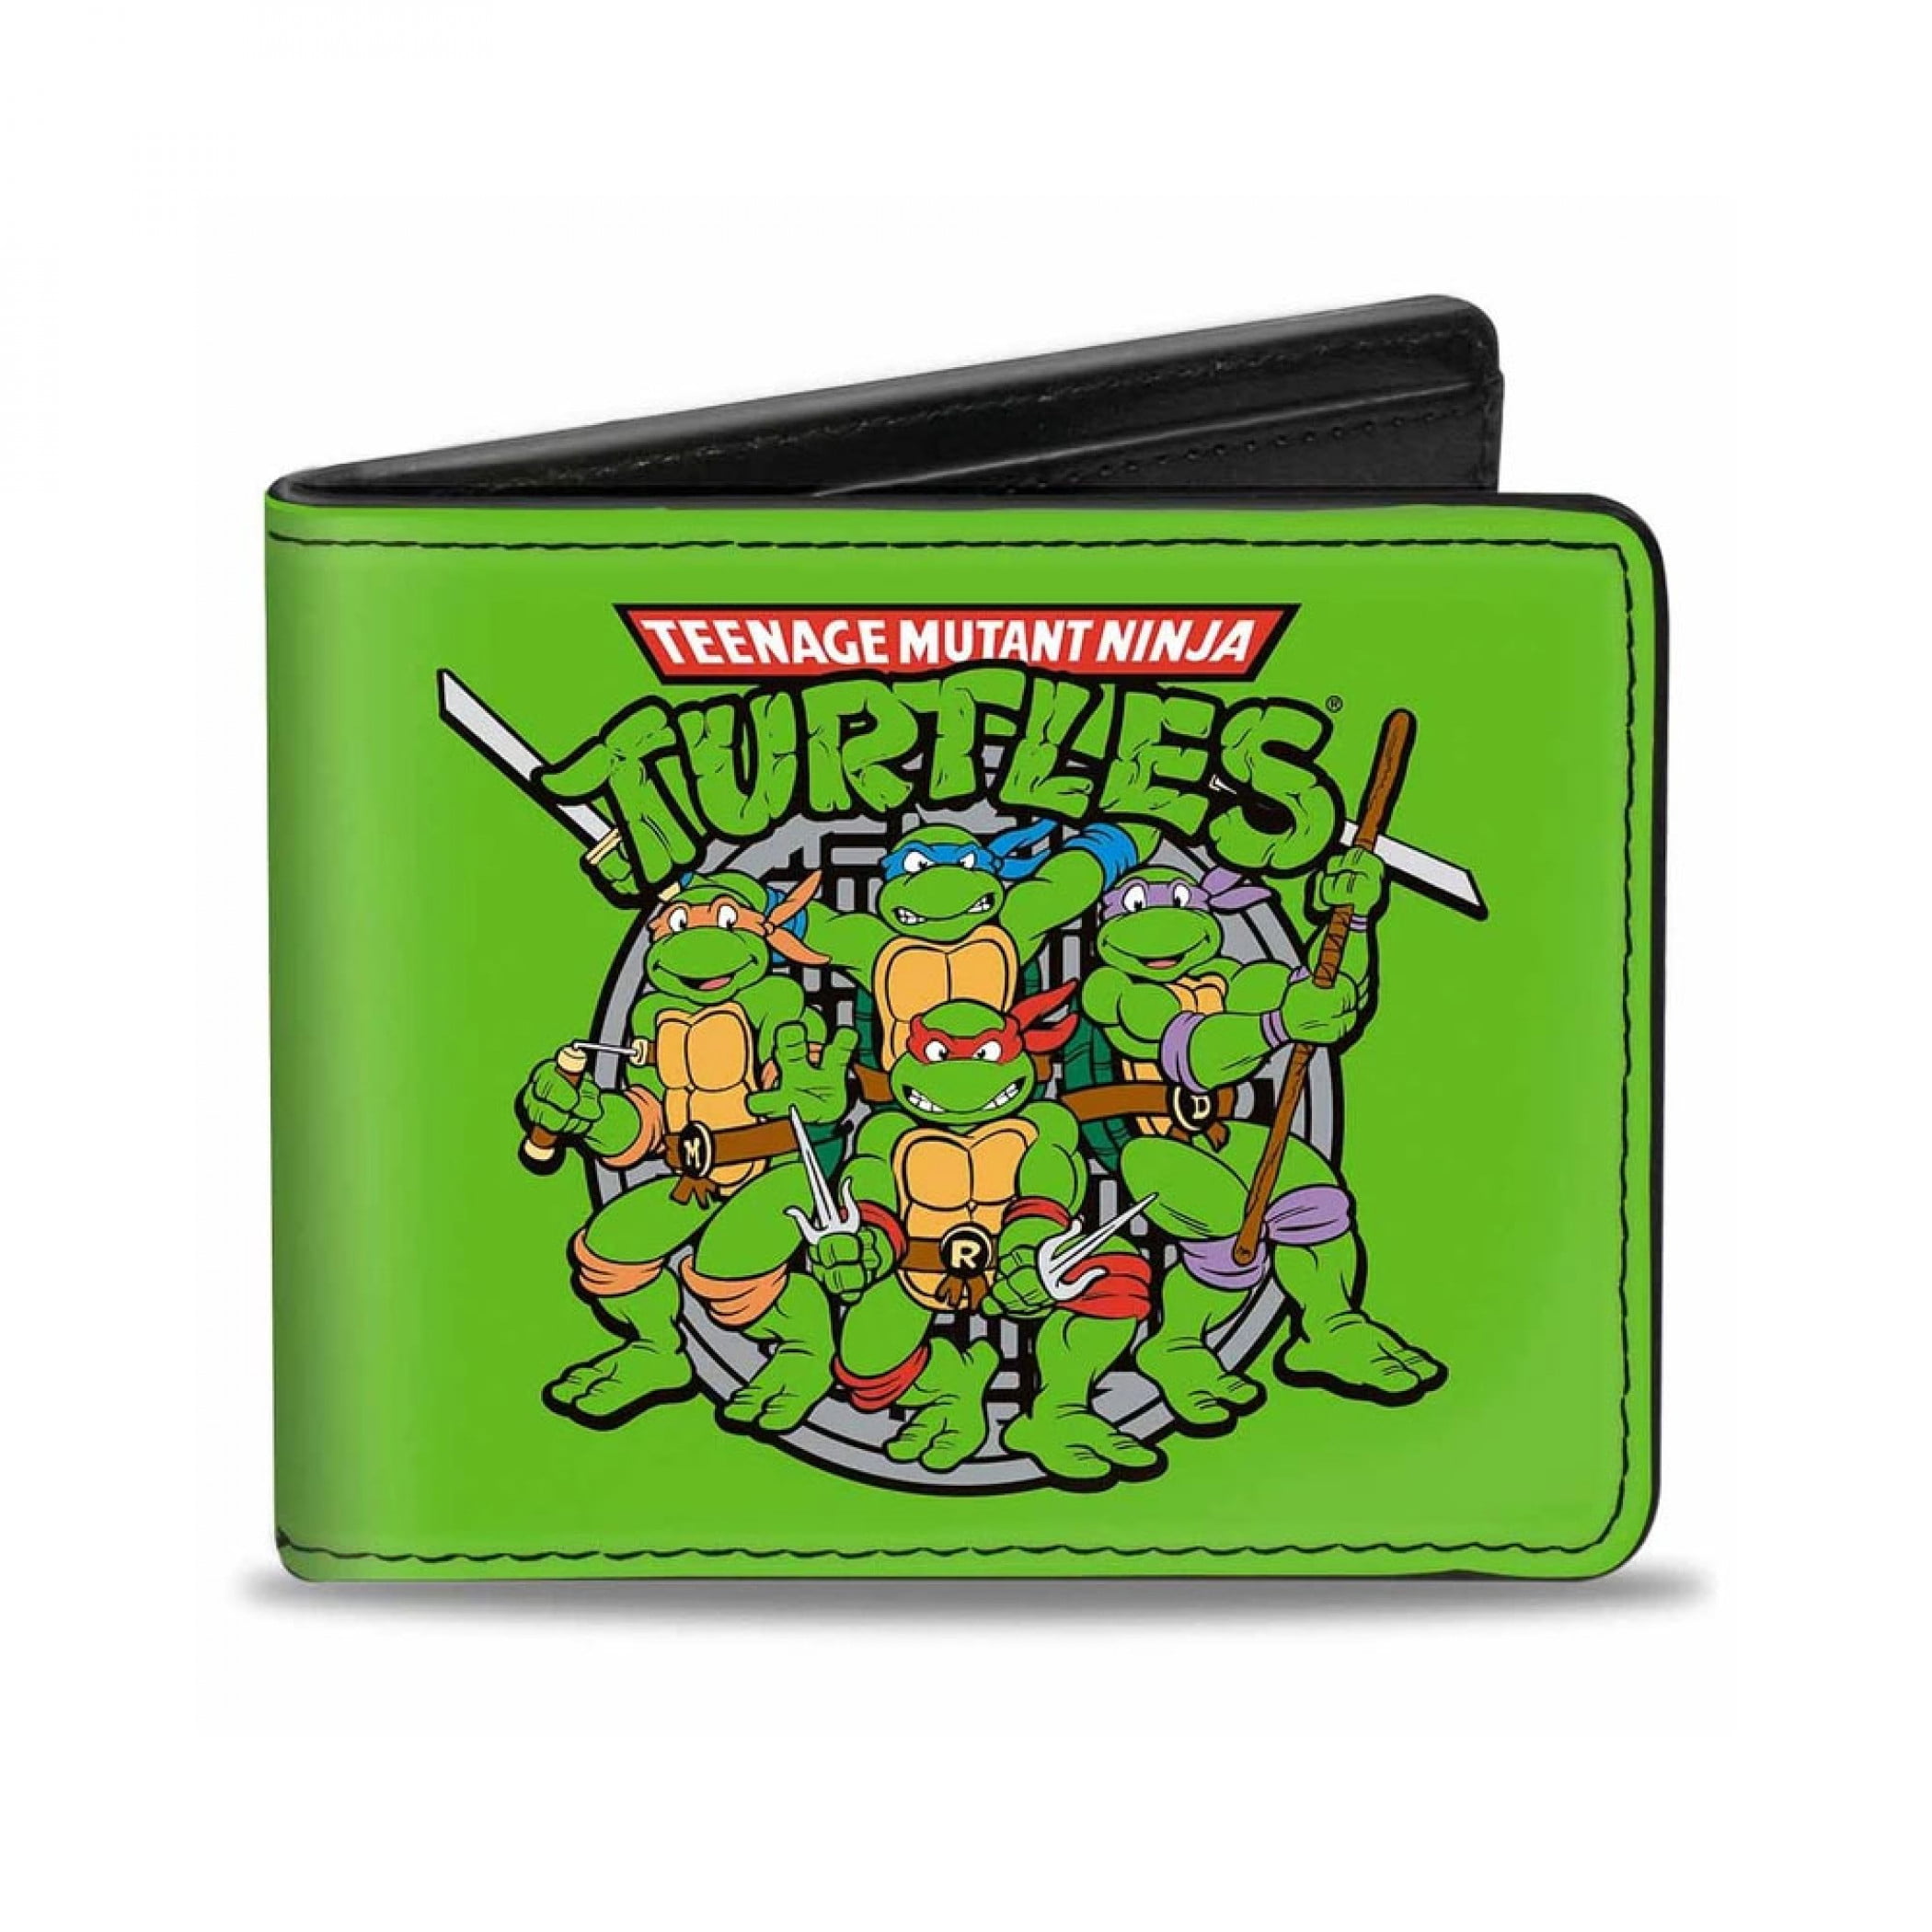 Teenage Mutant Ninja Turtles TMNT Wallet Anime Cartoon 2 Styles US Seller New 